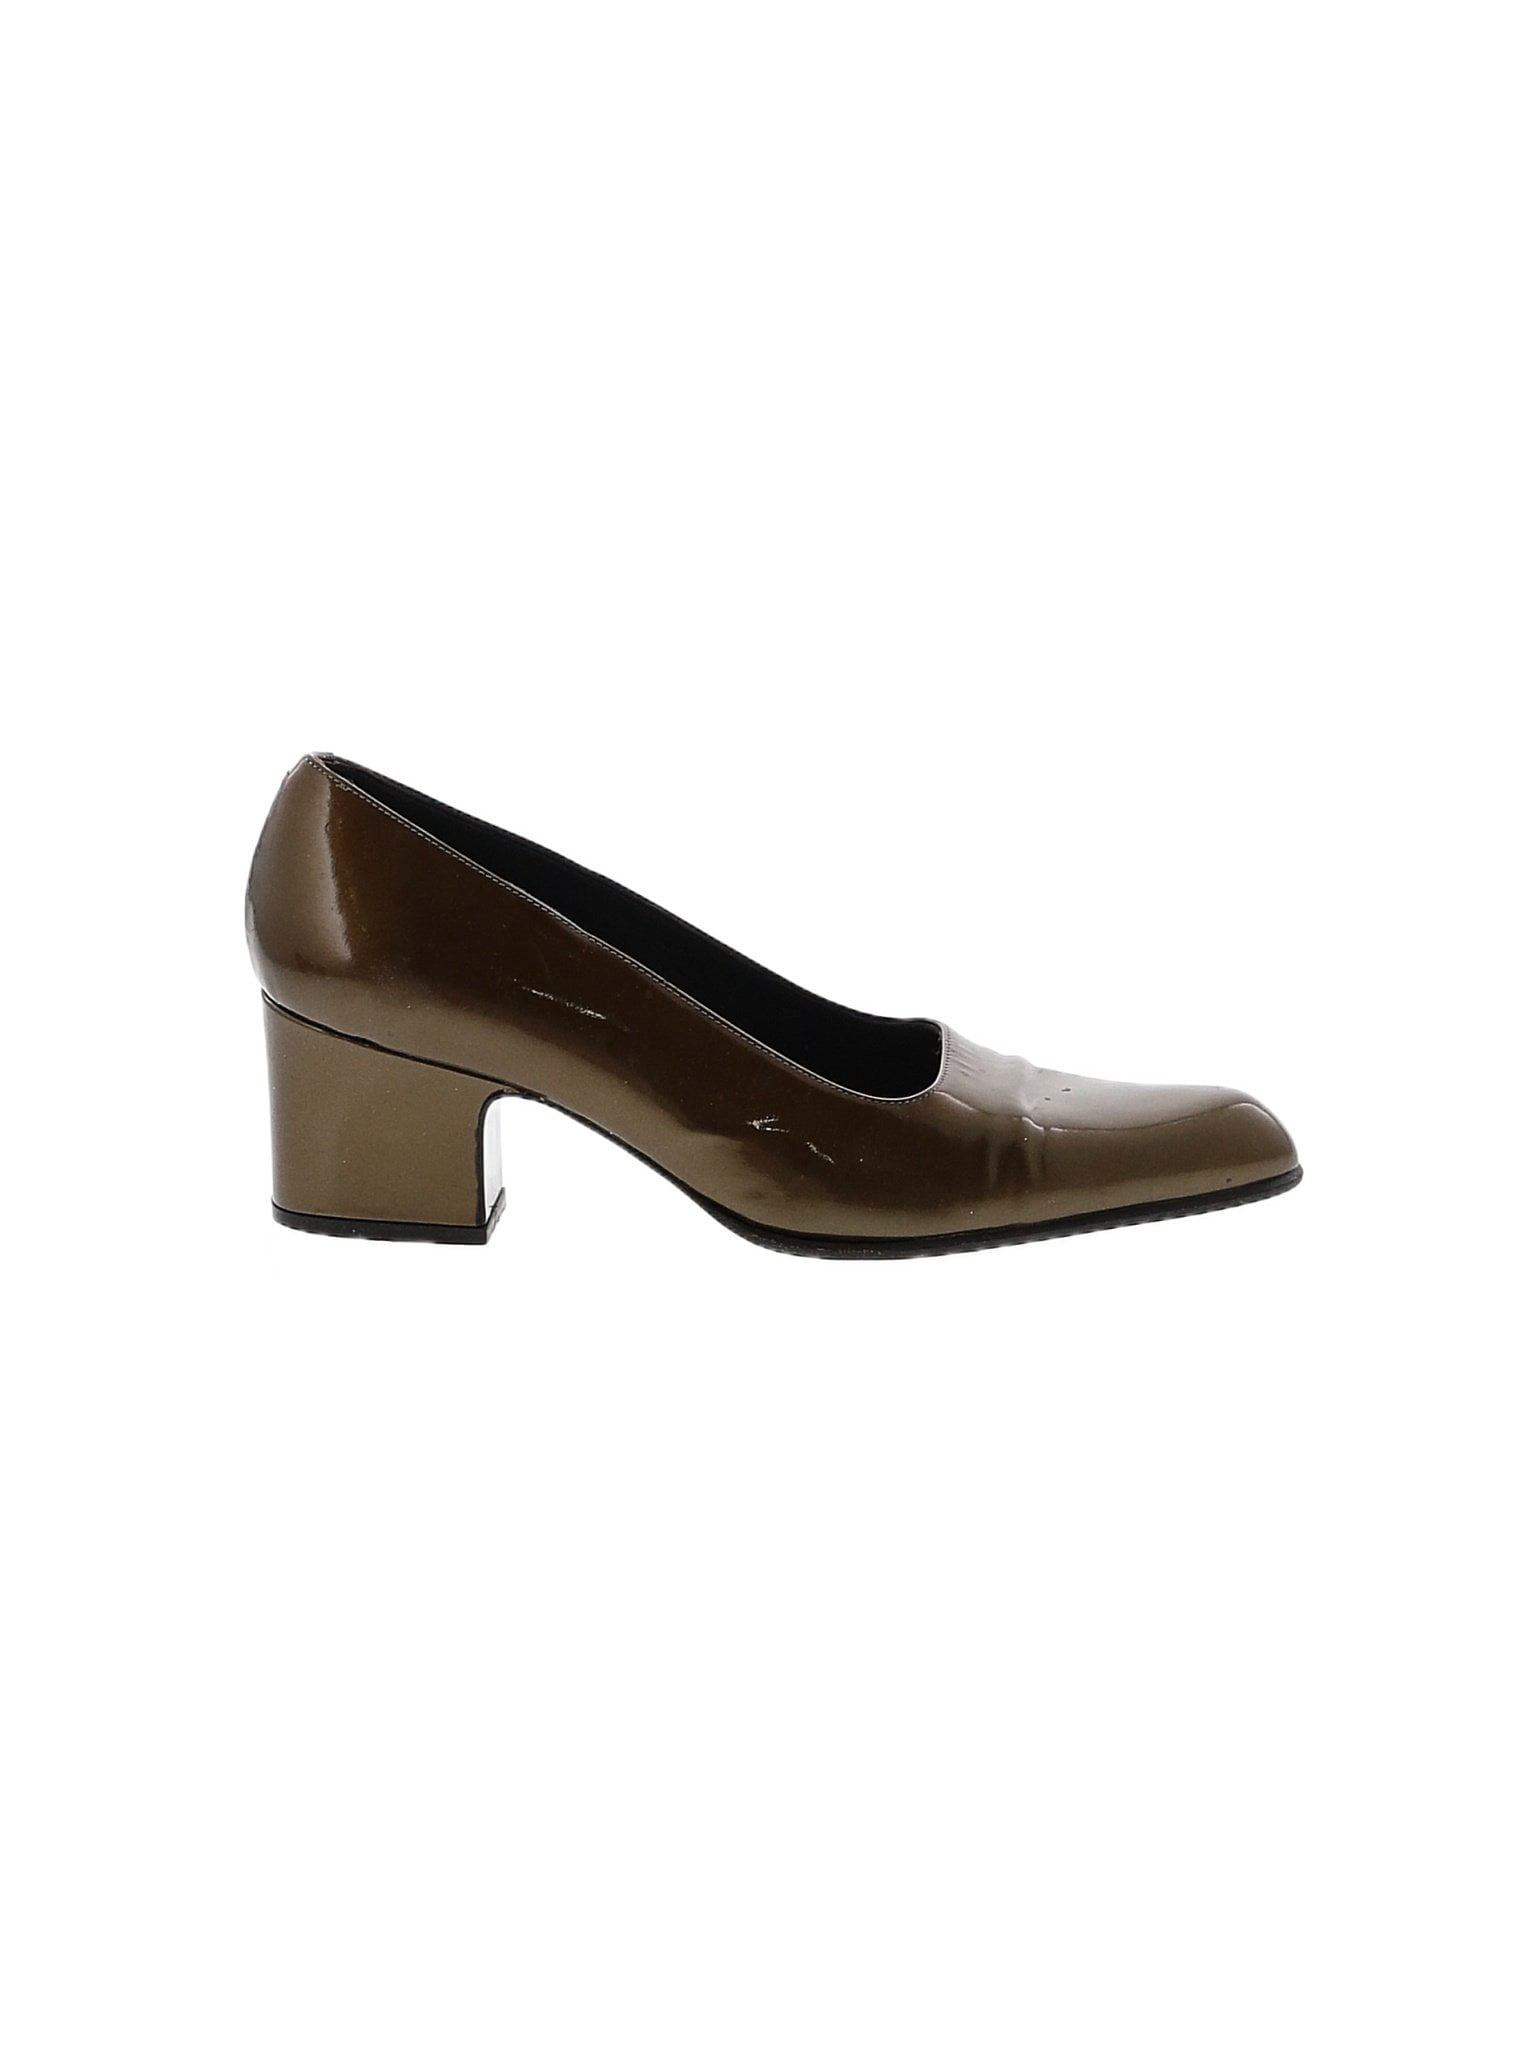 women black & white bally heel sandal FEEL PHEONA